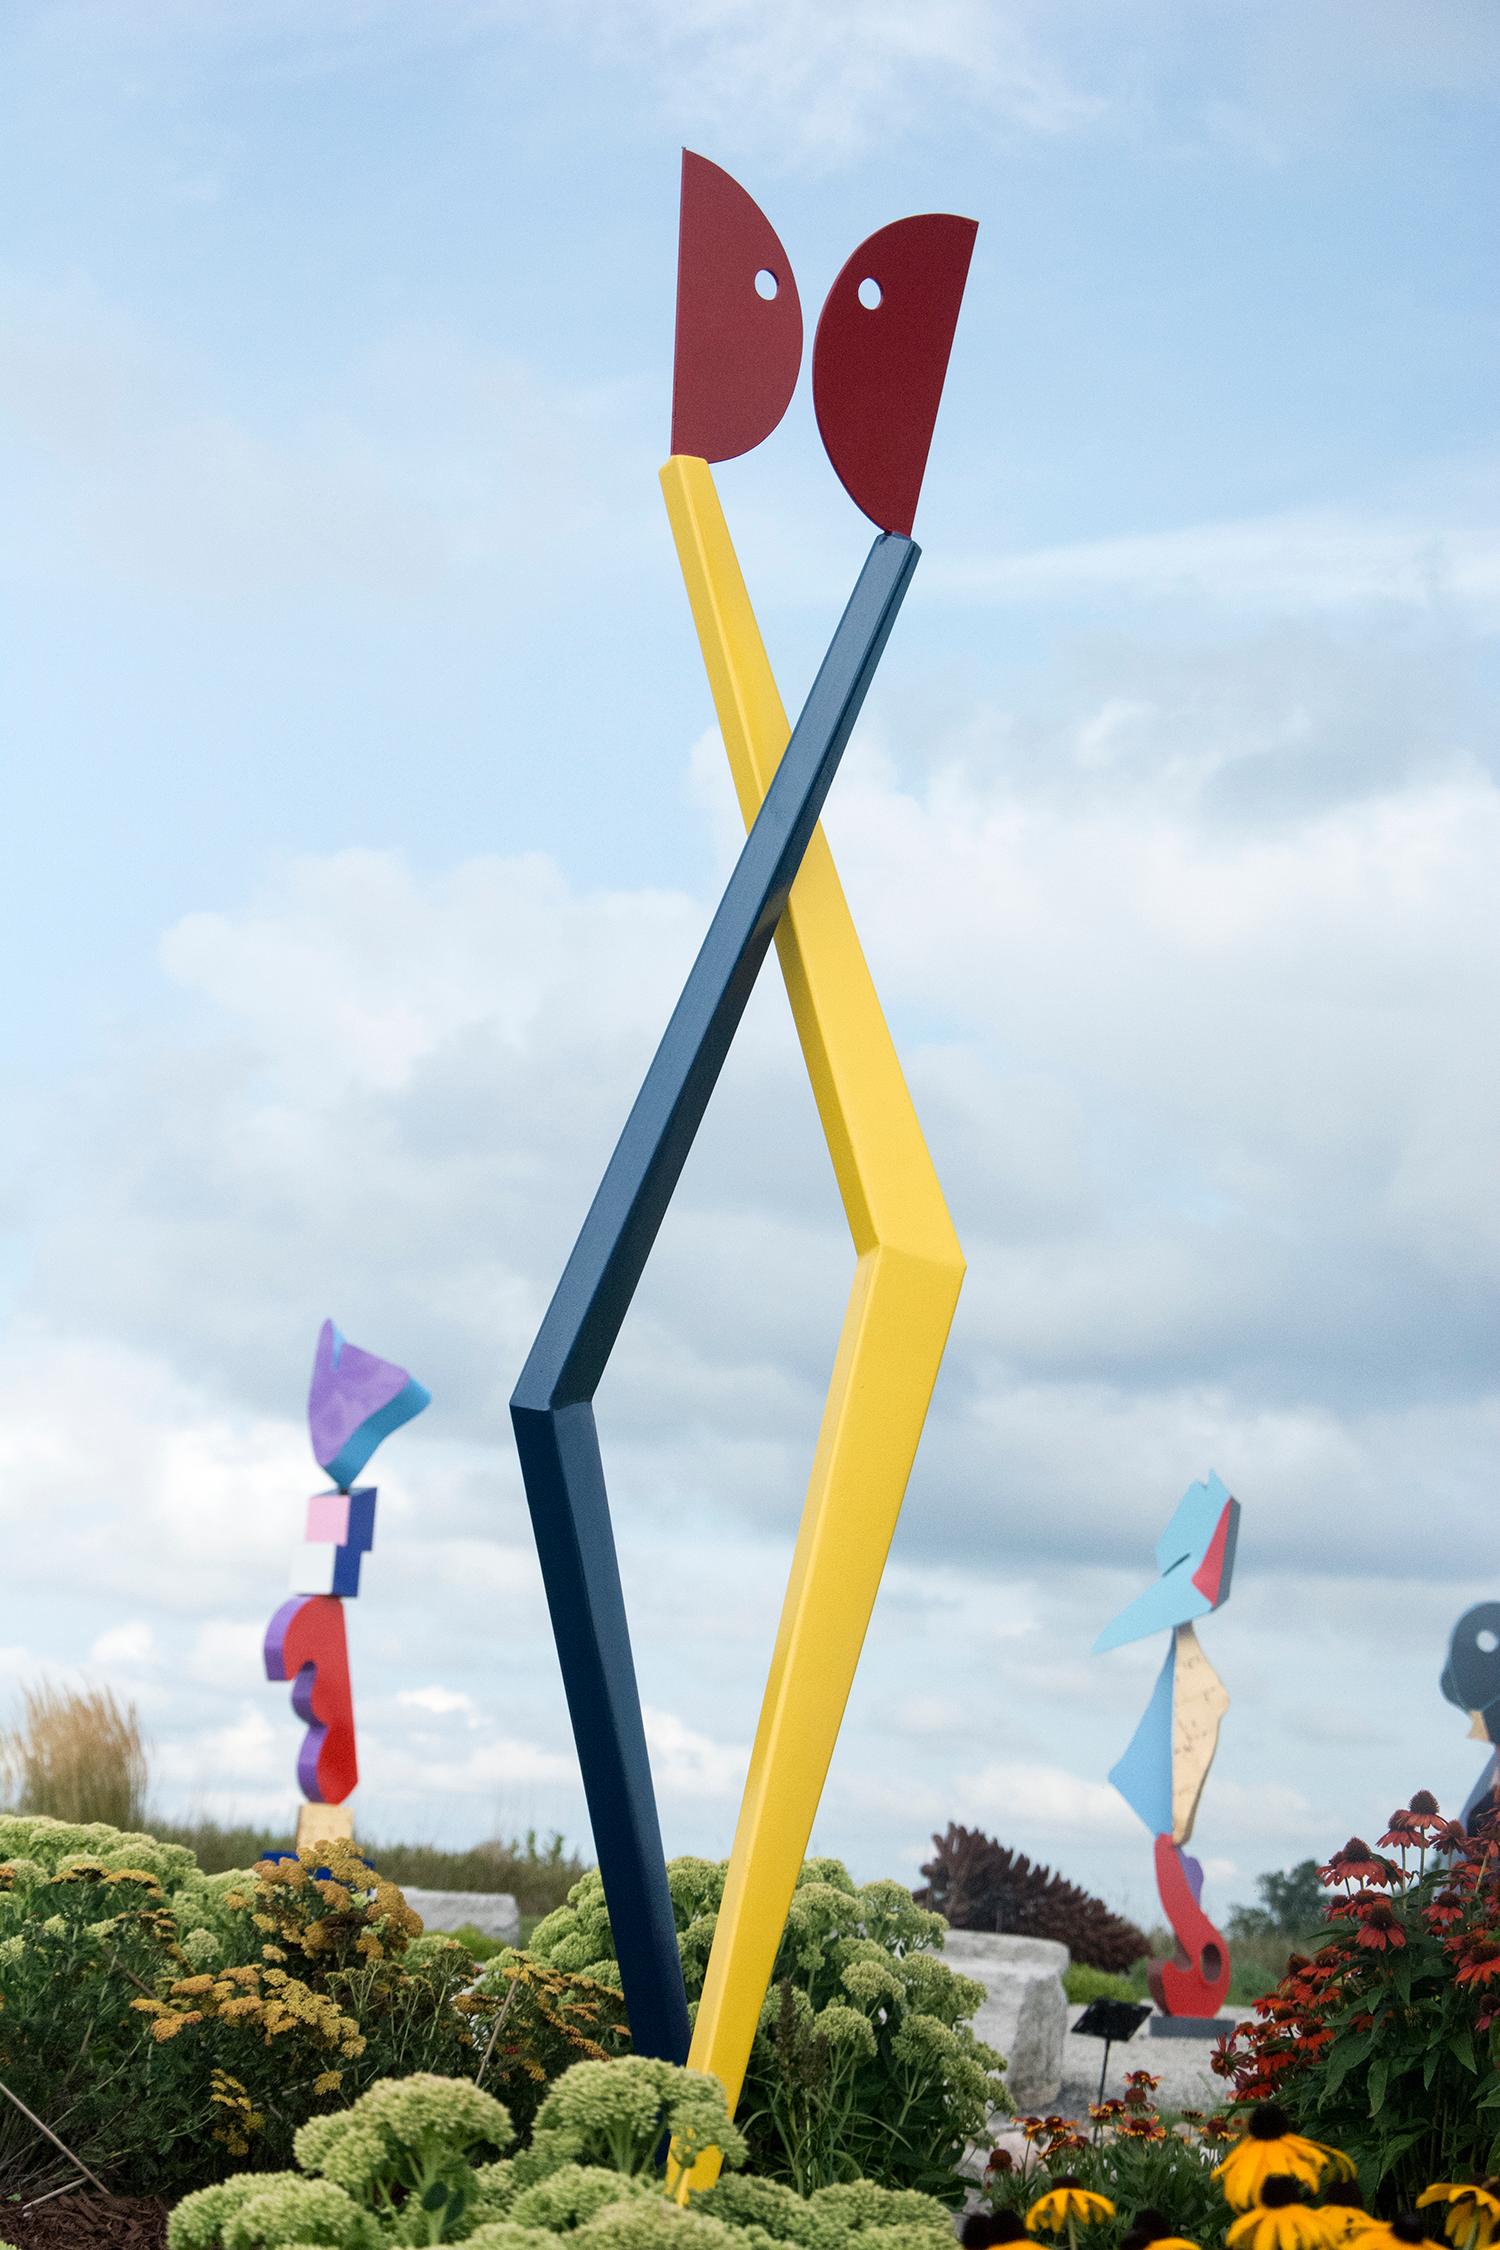 R. Clark Ellis Abstract Sculpture - First Dance - playful modernist outdoor sculpture